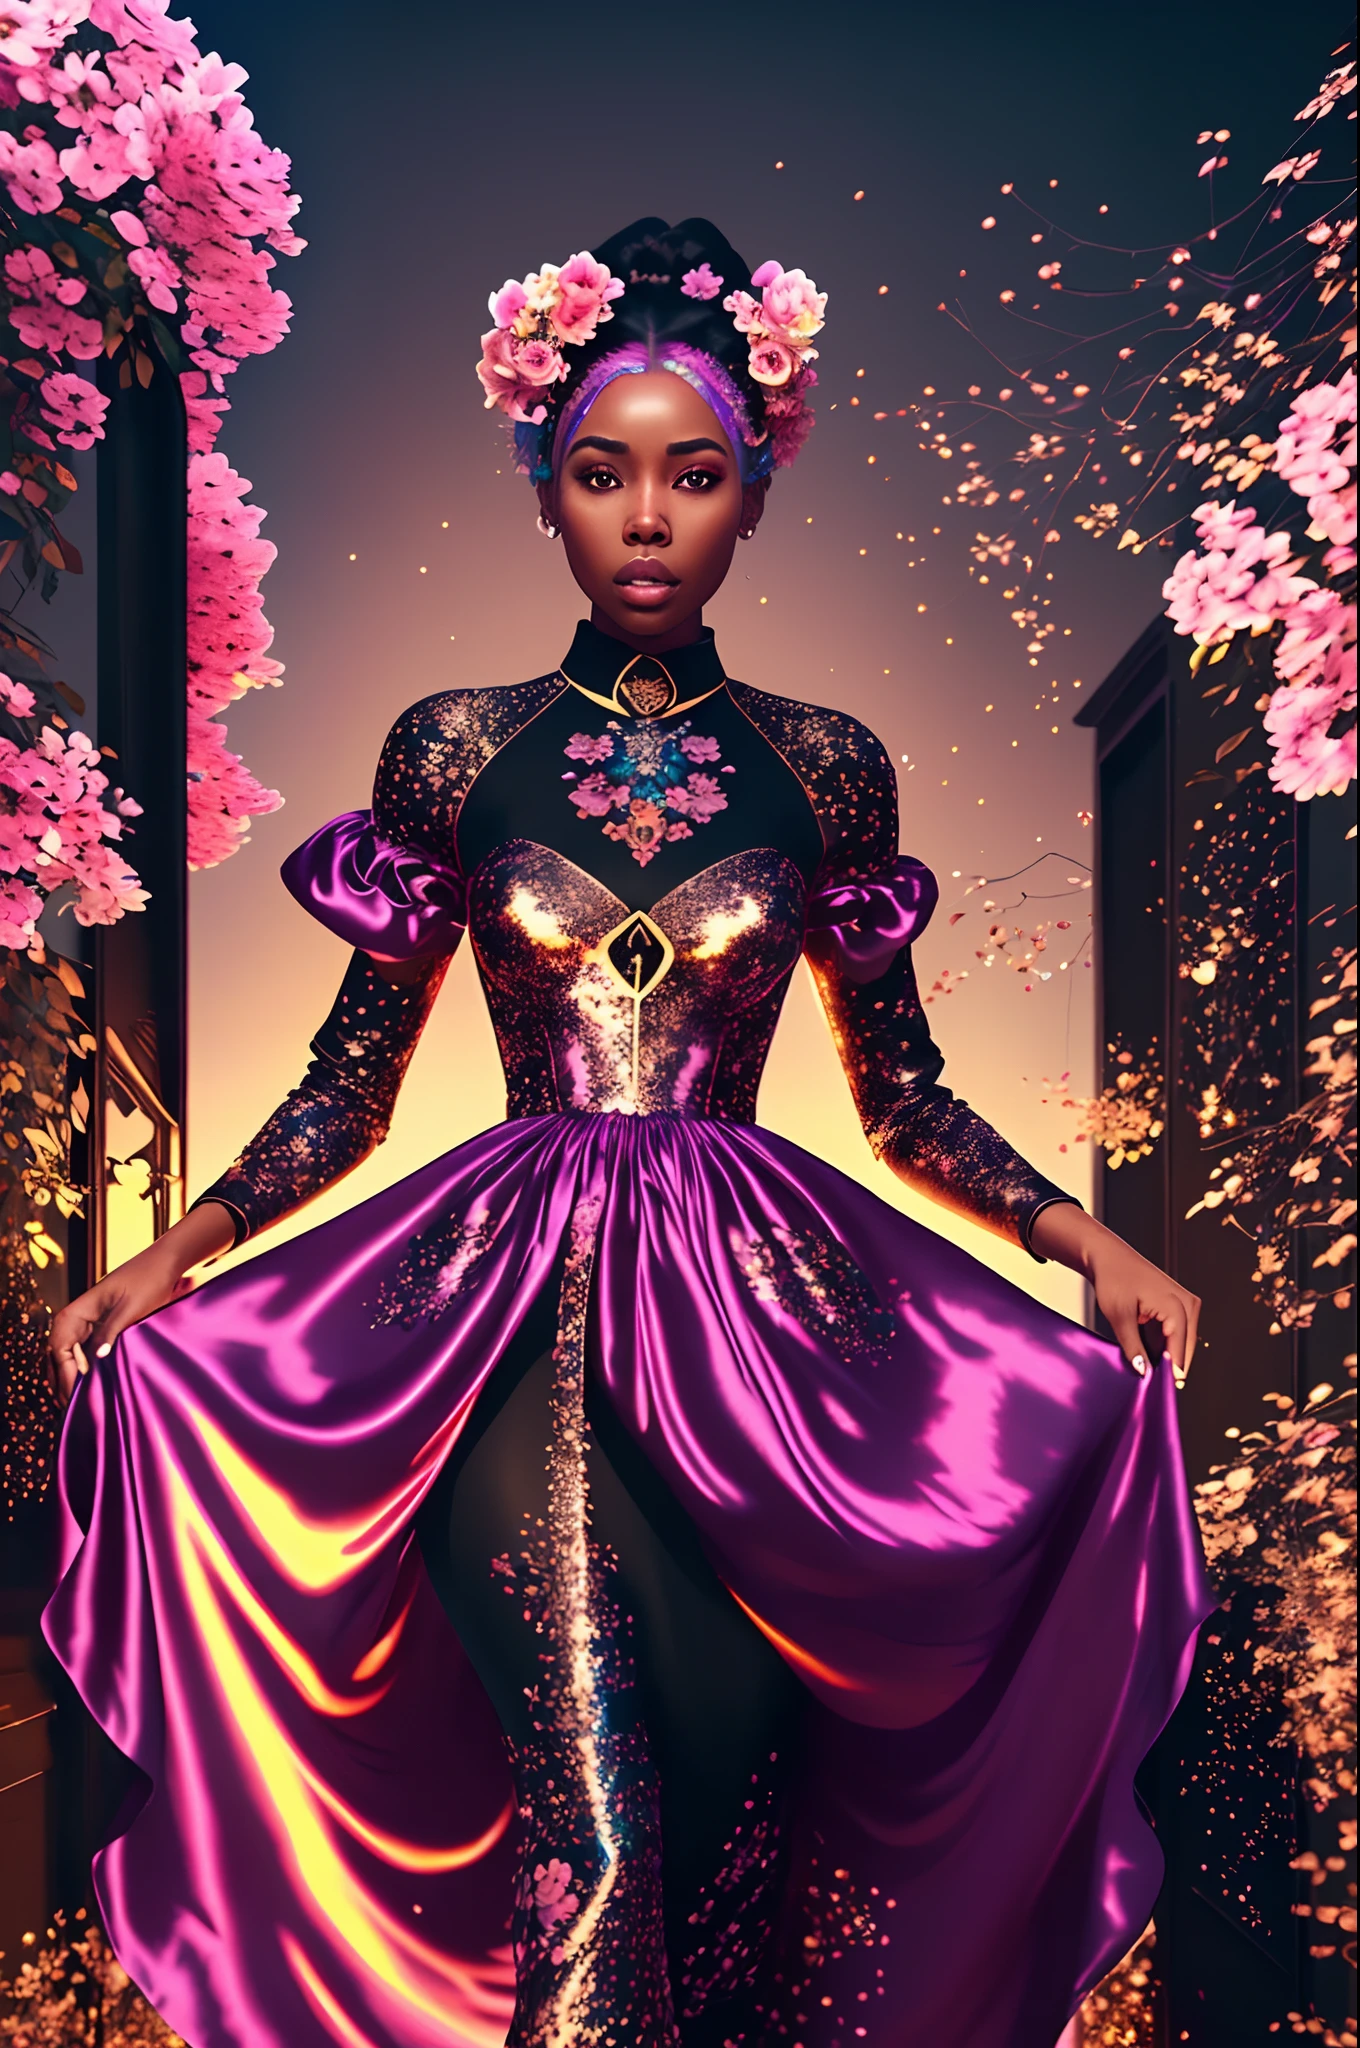 실크 부드러운 드레스를 입고 장미빛 황금빛 천국을 걷고 있는 아름다운 흑인 여성, 무지개 빛깔의 빛으로, 매우 상세한 이미지, 생기 넘치는 아름다운 색상, 사실적인 이미지, 32,000, 울트라 HD, 언리얼 엔진 렌더링, 시네마틱 조명, 삽화: Bella box, 아트저먼 스타일, deviantart --auto --s2